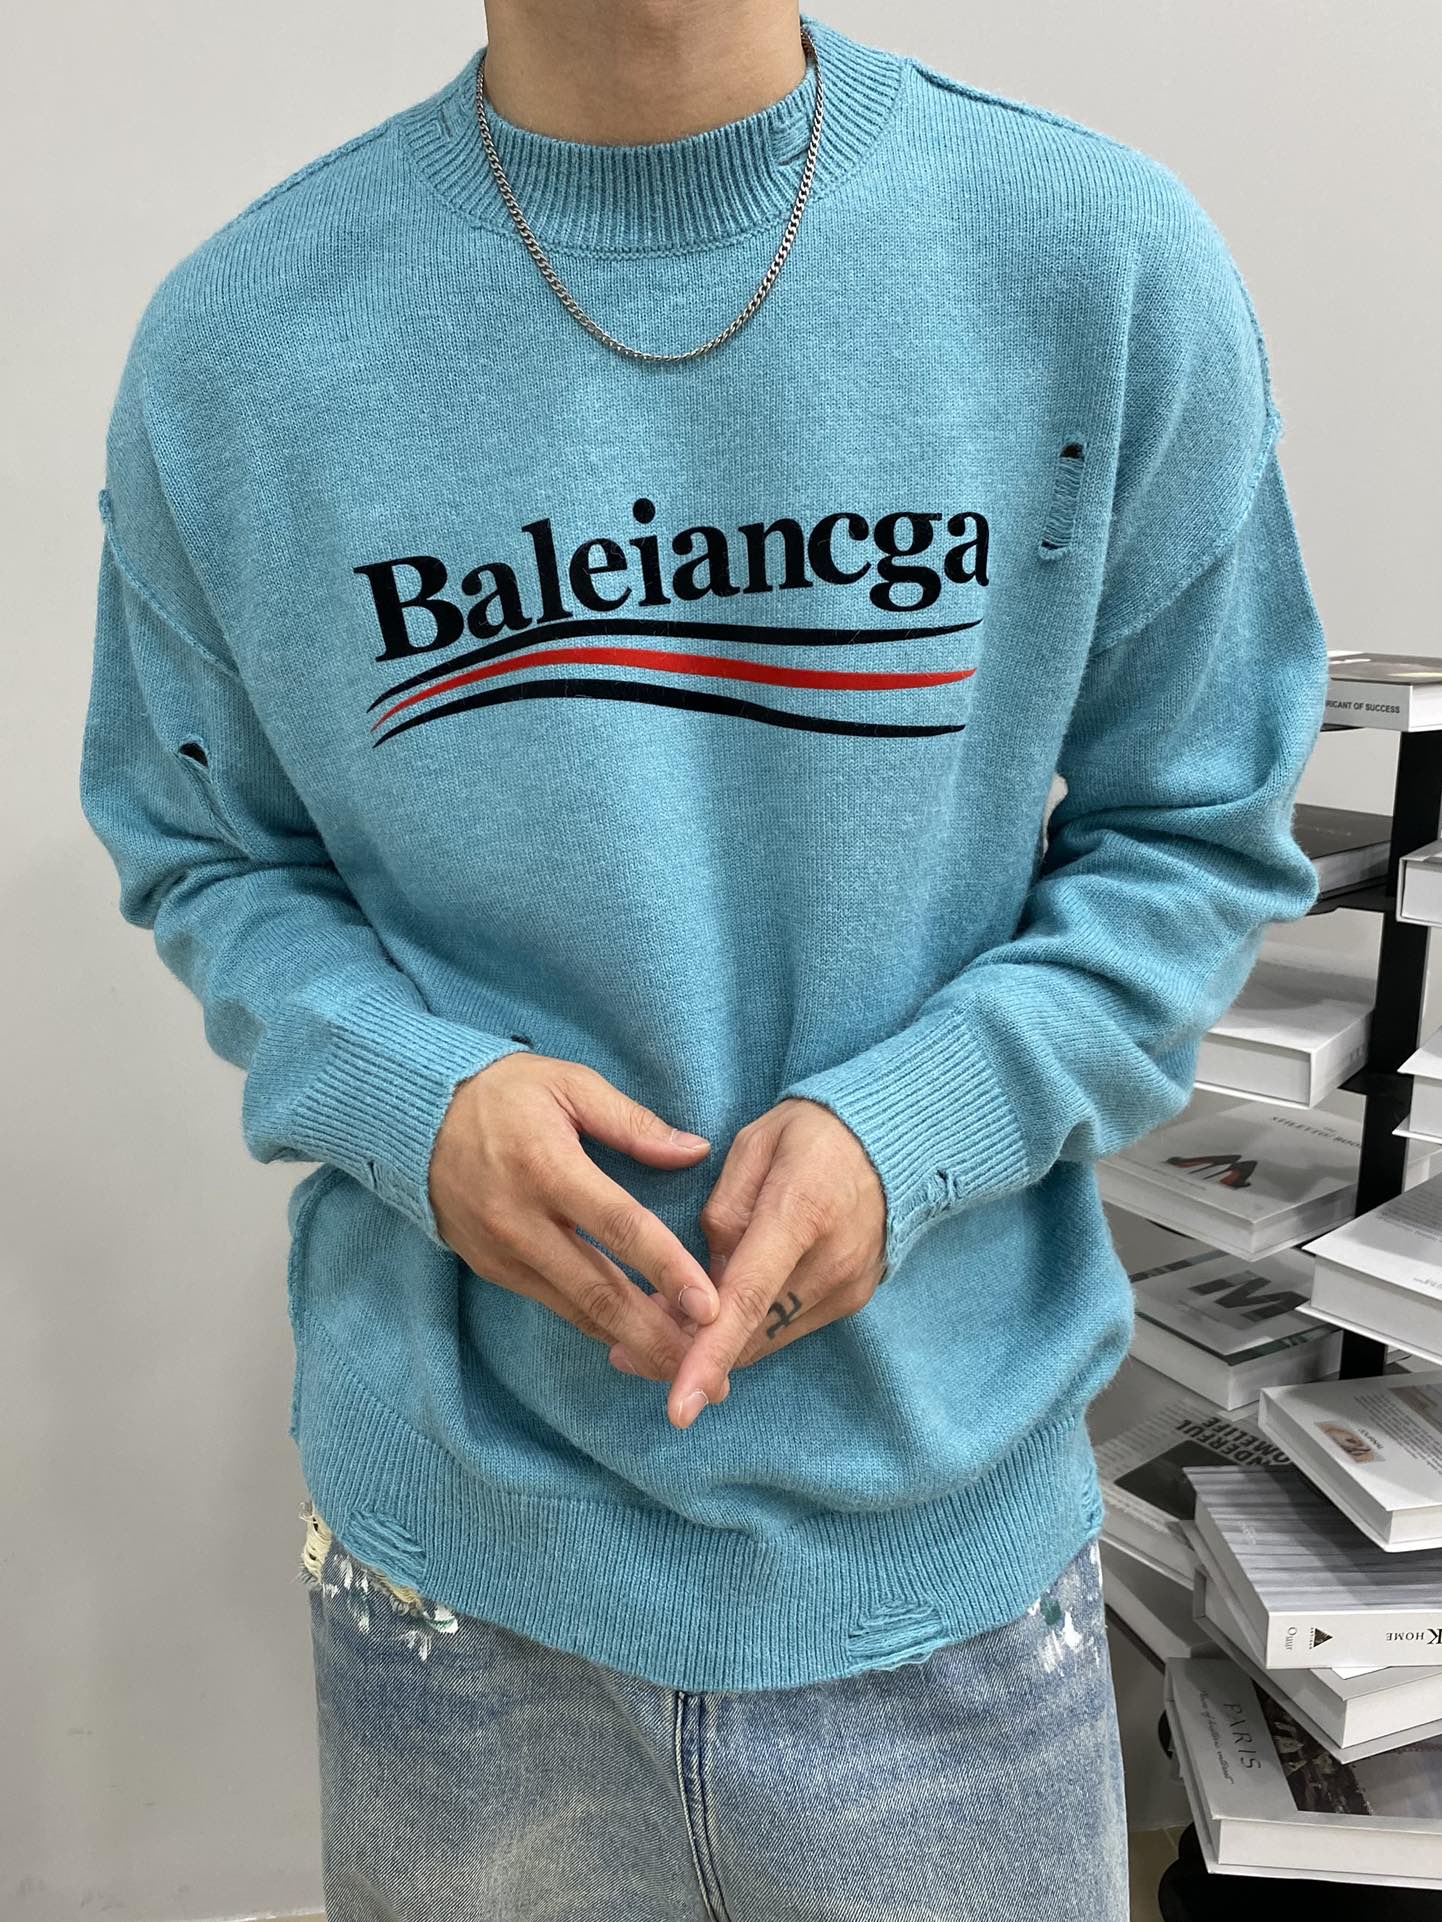 バレンシアガといえばコピー BALENCIAGA 長袖 柔らかい 純綿 セーター 暖かい ブルー_1